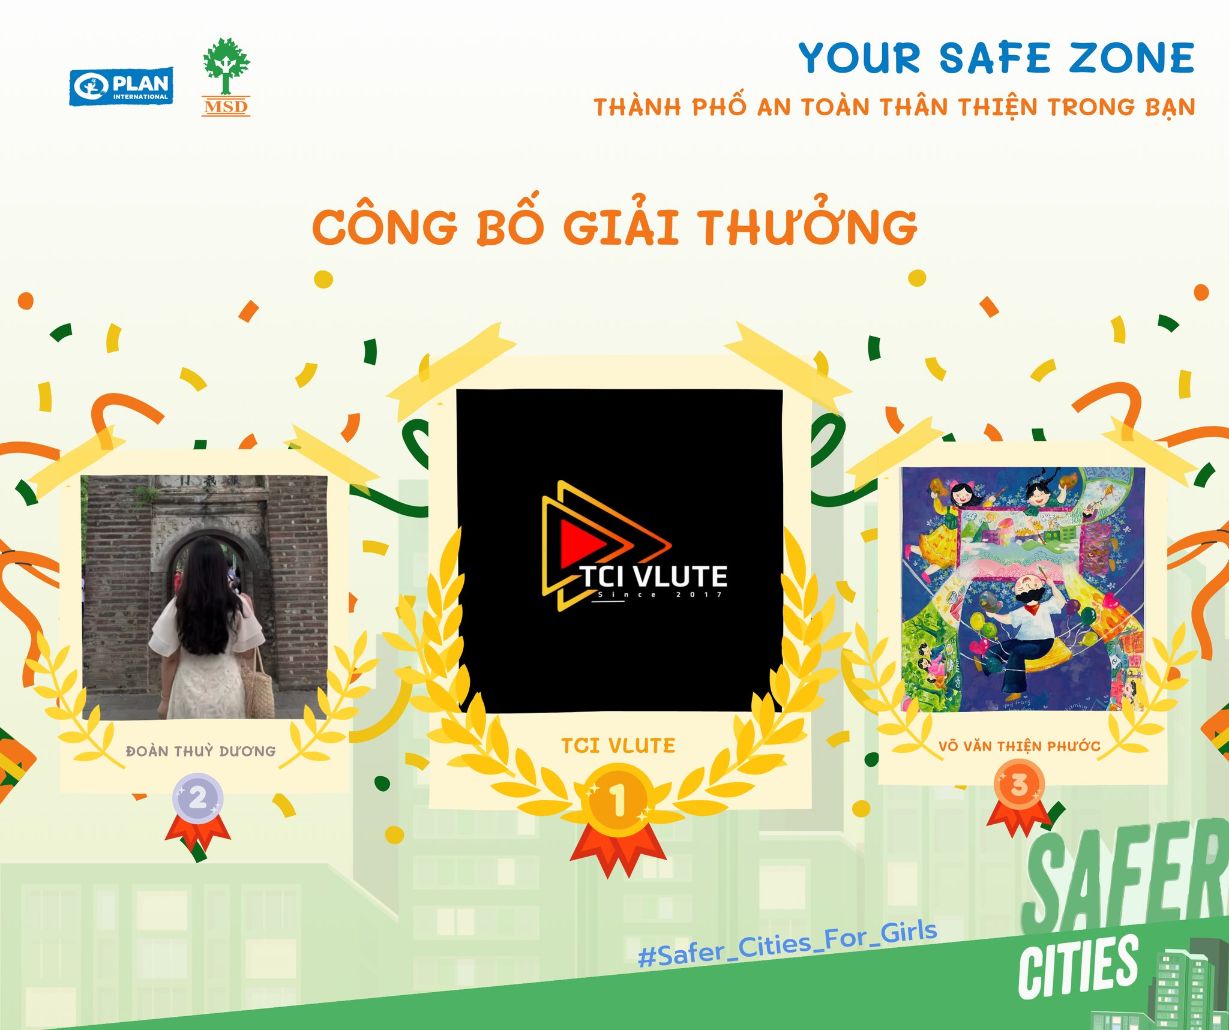 Your Safe Zone 2 Công bố kết quả cuộc thi Your Safe Zone – Thành phố An toàn và Thân thiện trong bạn